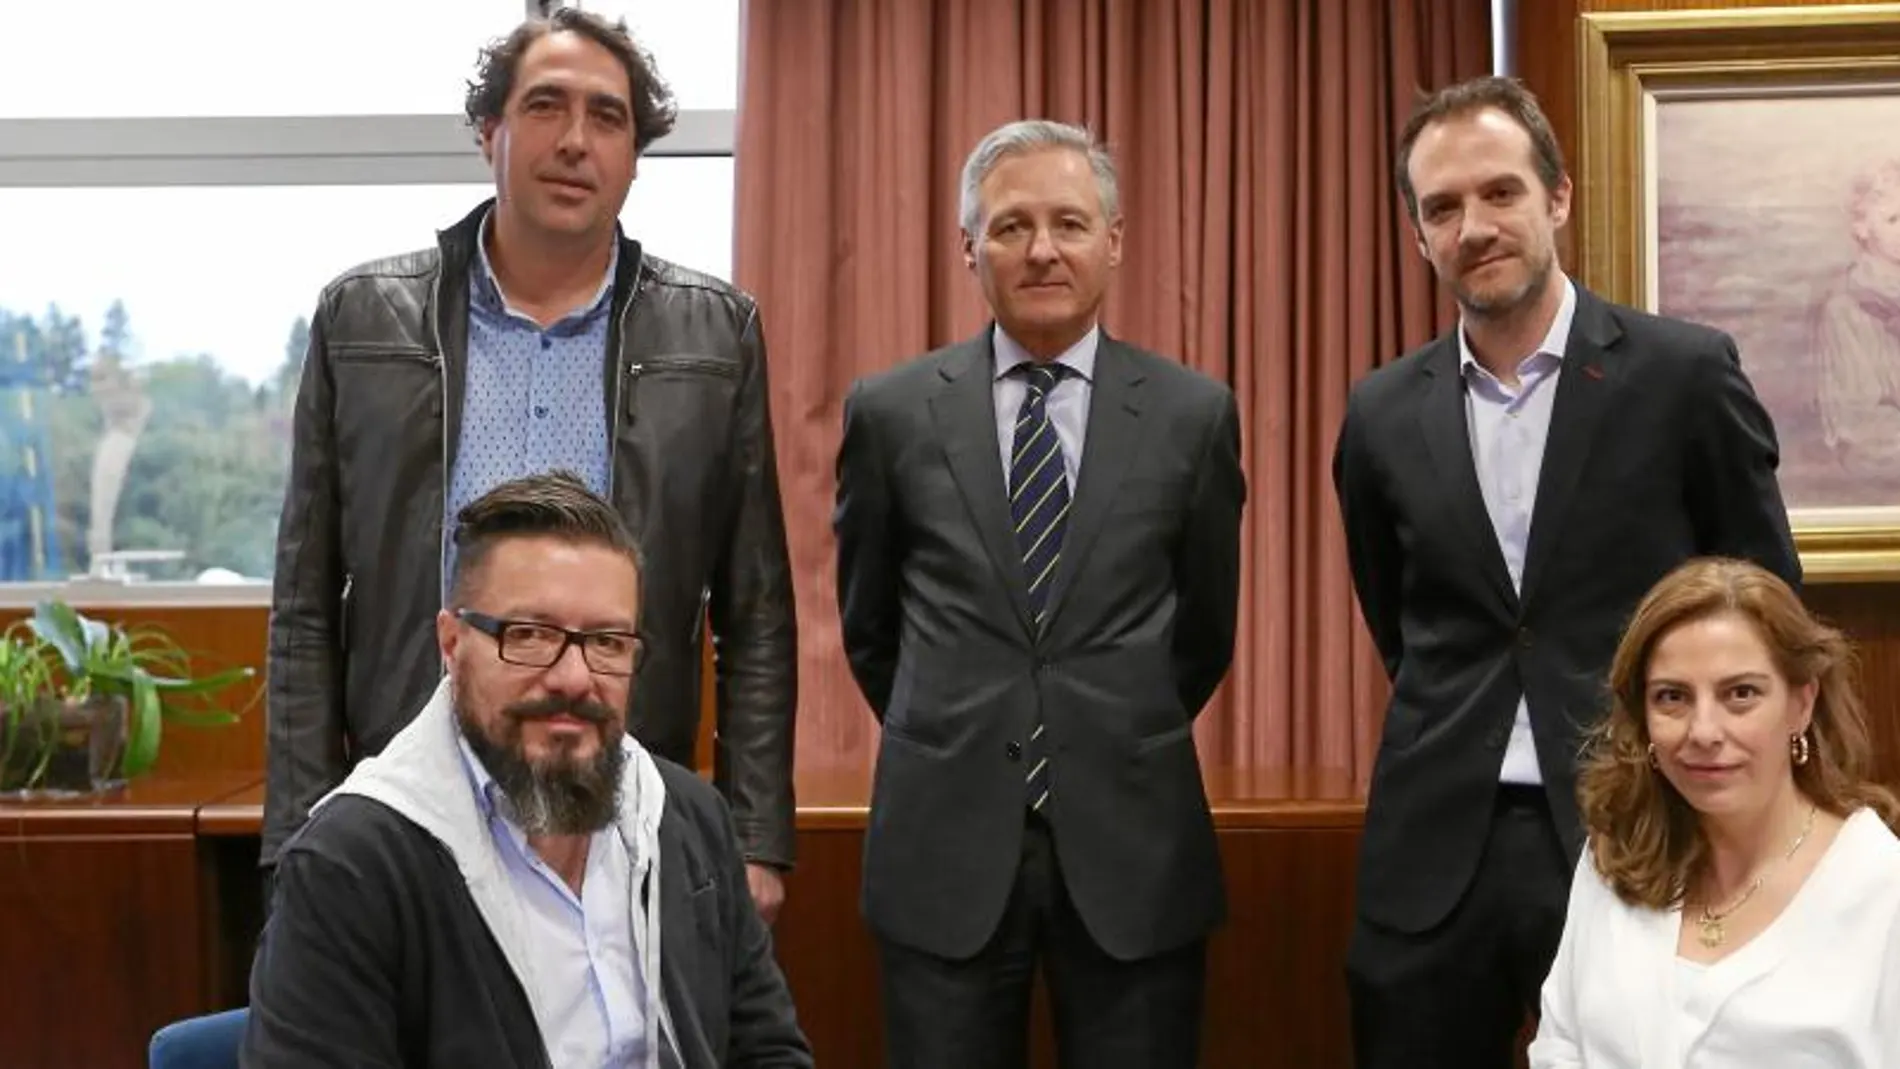 Los ponentes. De iquierda a derecha, Joaquín Marco, Juan Chozas y Luis Escribano. Sentados, Juan Carlos Baumgartner y Noelia de Lucas